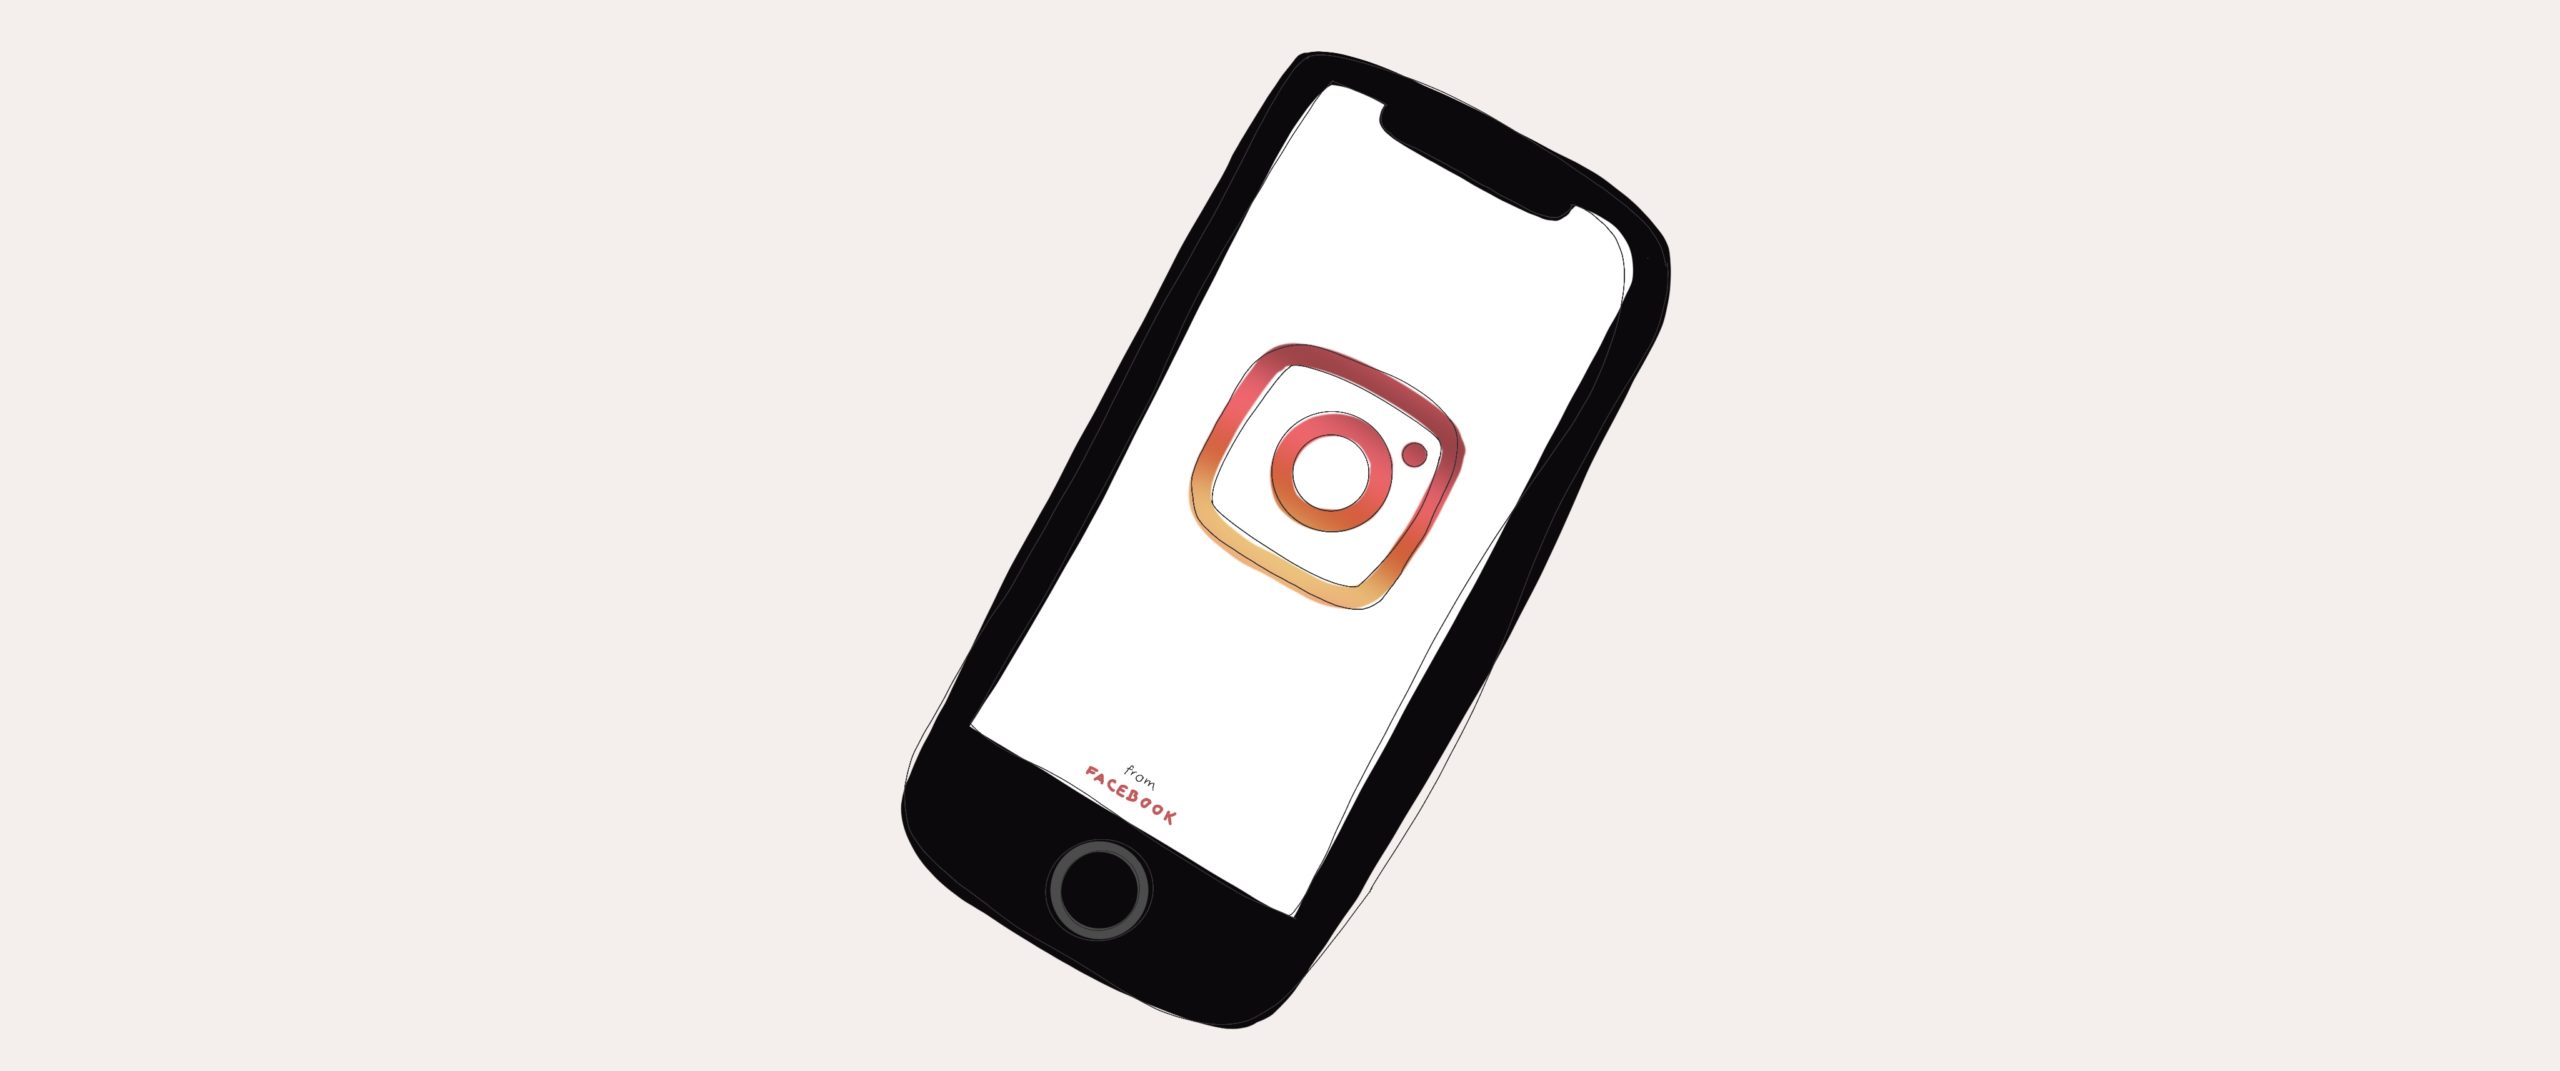 #8 Die extreme Rechte auf Social Media – Instagram: Rechte Ideologien versteckt hinter schönem Schein